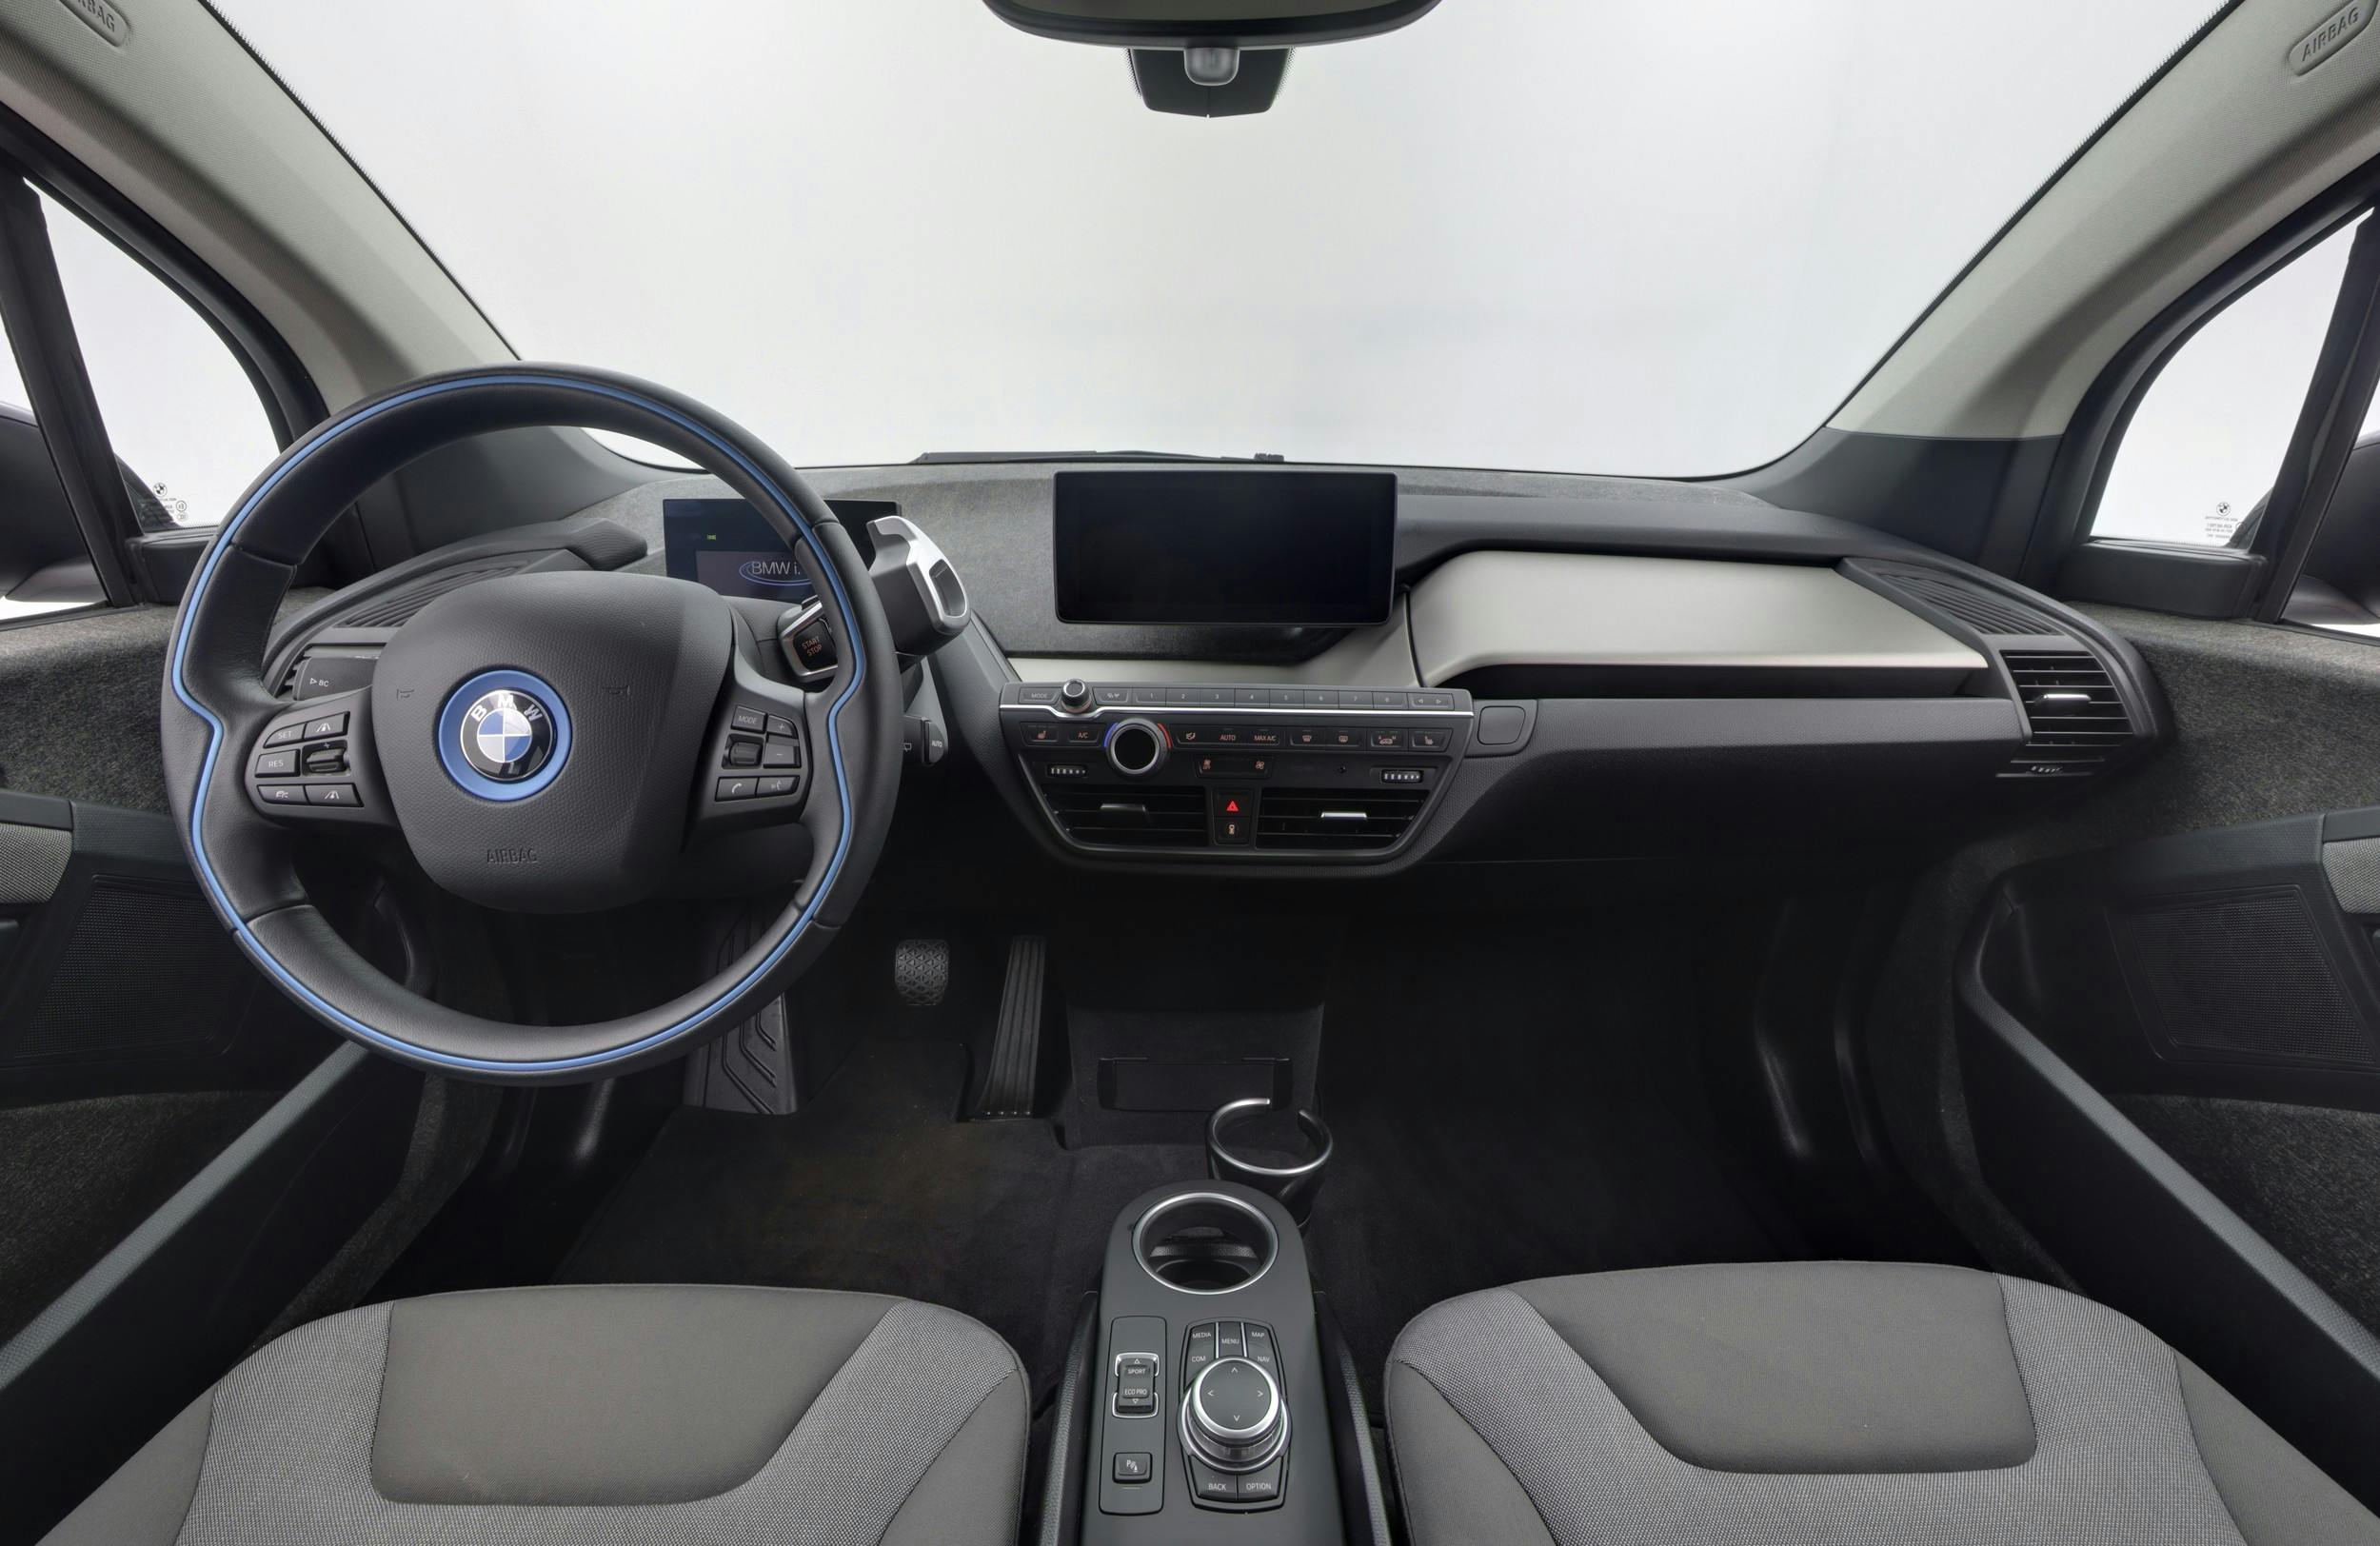 BMW i3s